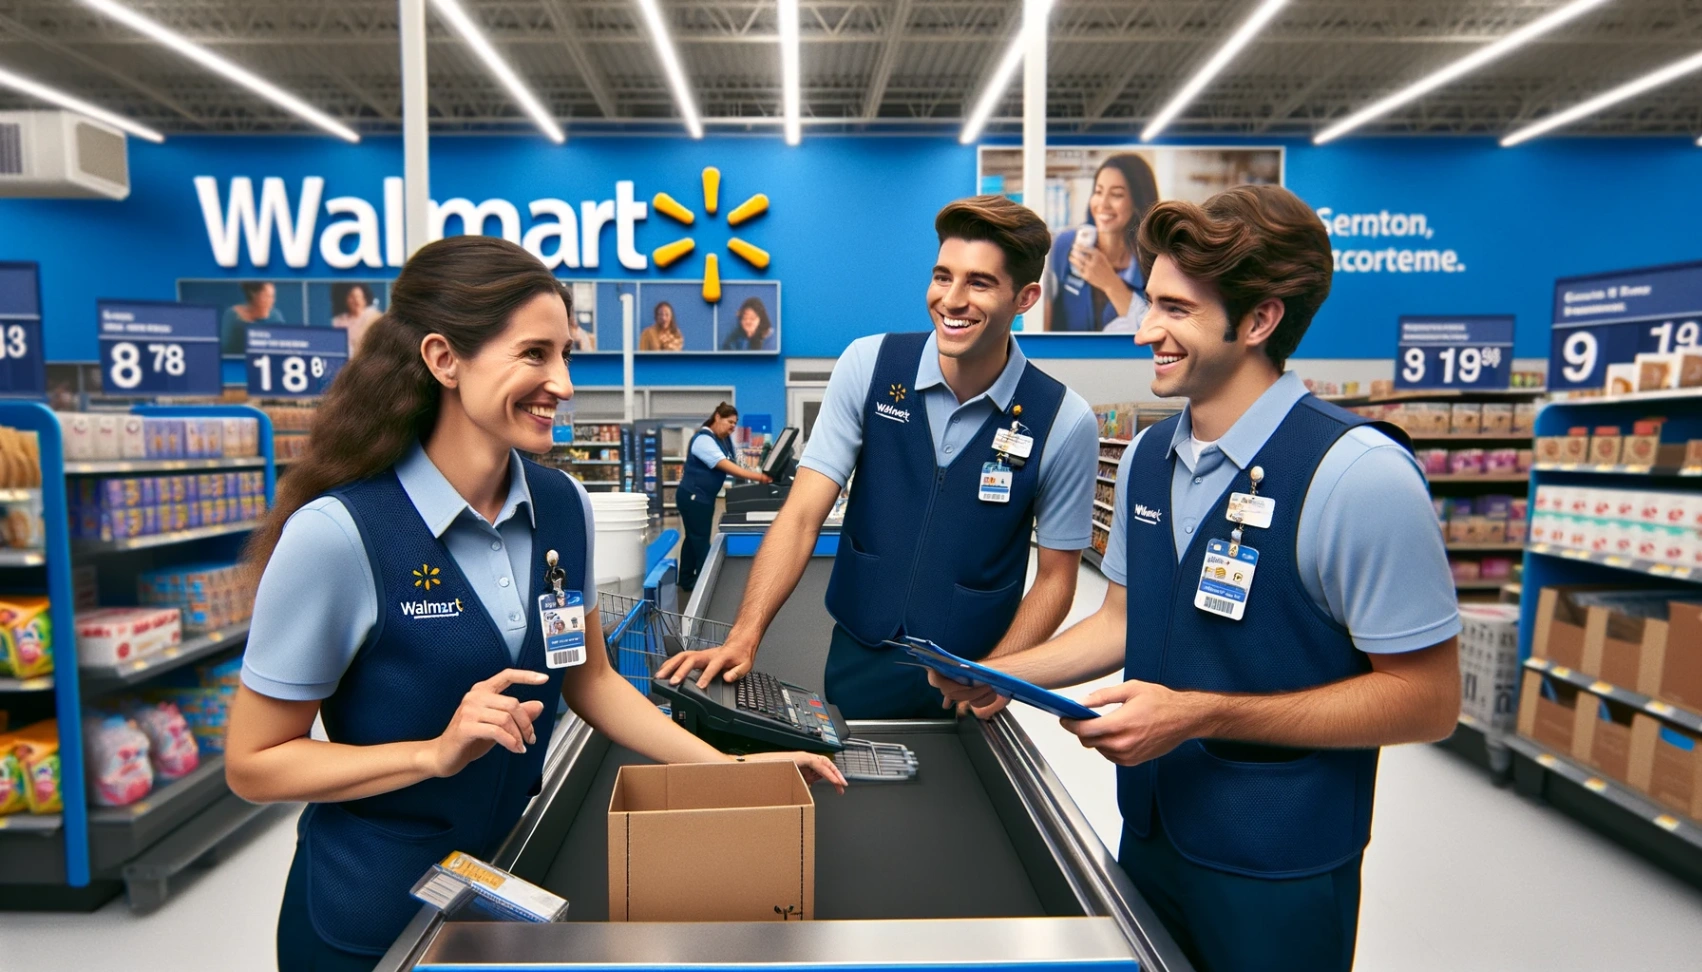 Walmart ledige stillinger - Lær hvordan man ansøger online